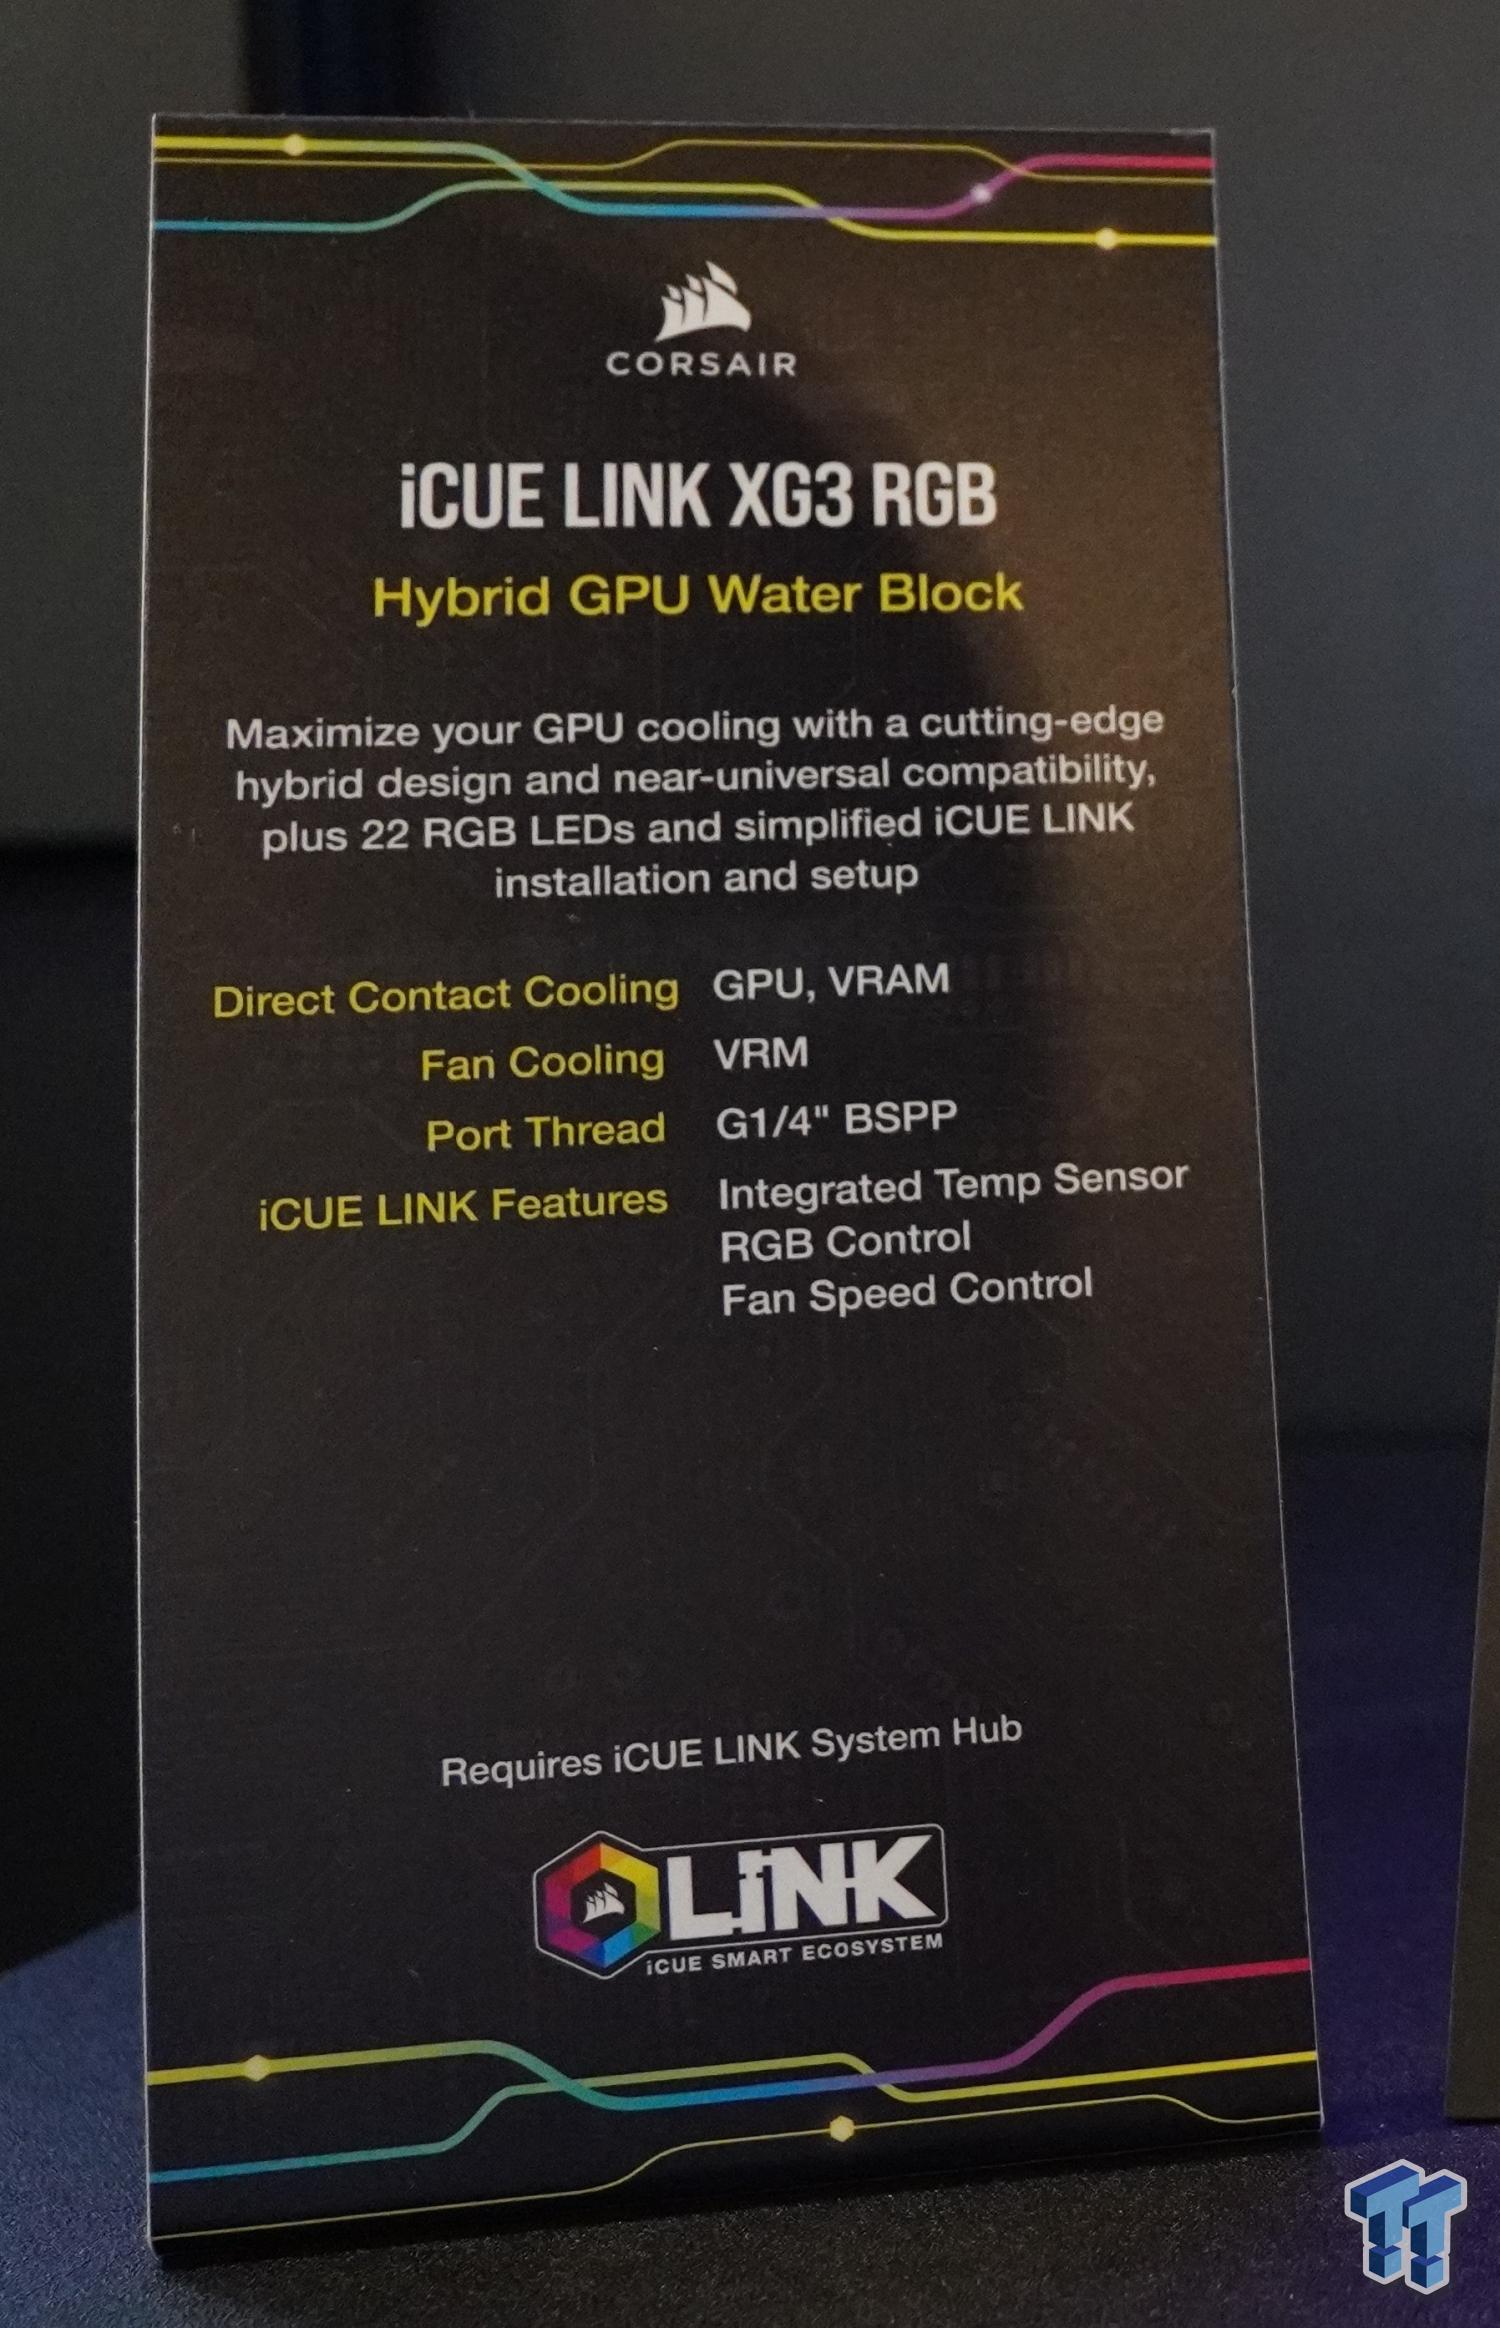 TweakTown Enlarged Image - Specs of Corsair's new hybrid GPU waterblock, the XG3.